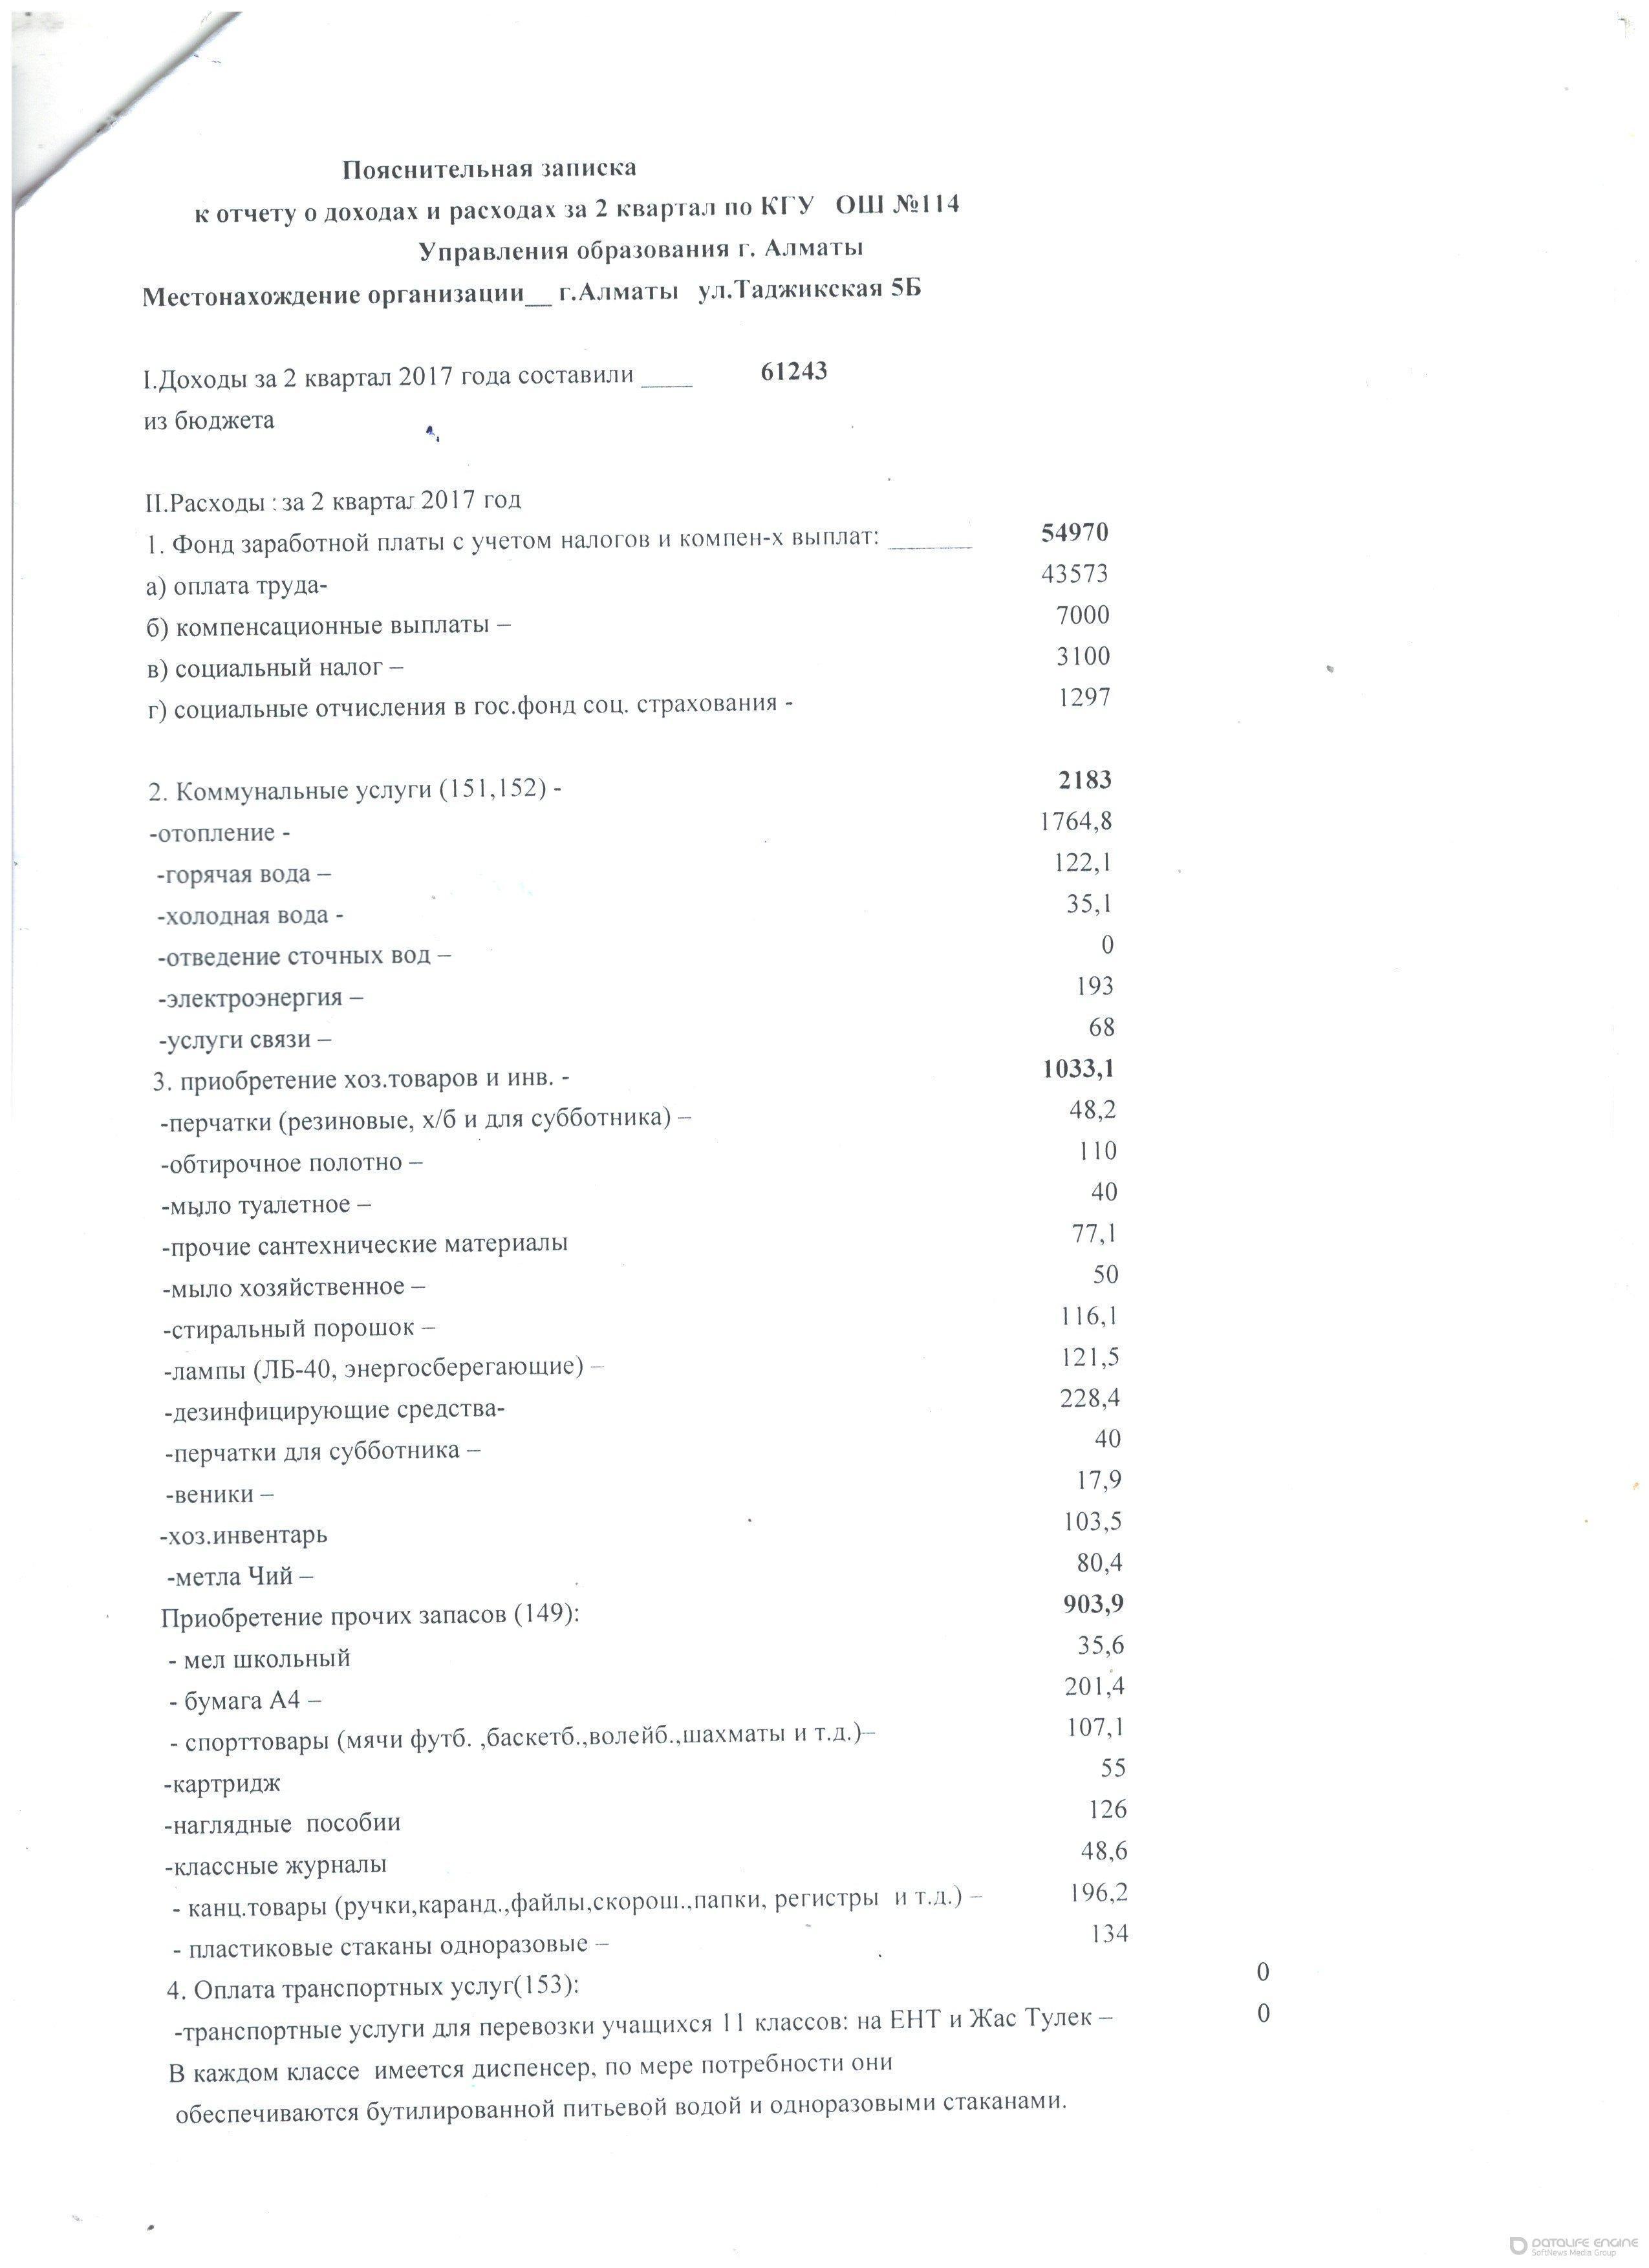 Отчёт о доходах и расходах за 2 квартал 2017 года КГУ ОШ № 114 У.О.г.Алматы